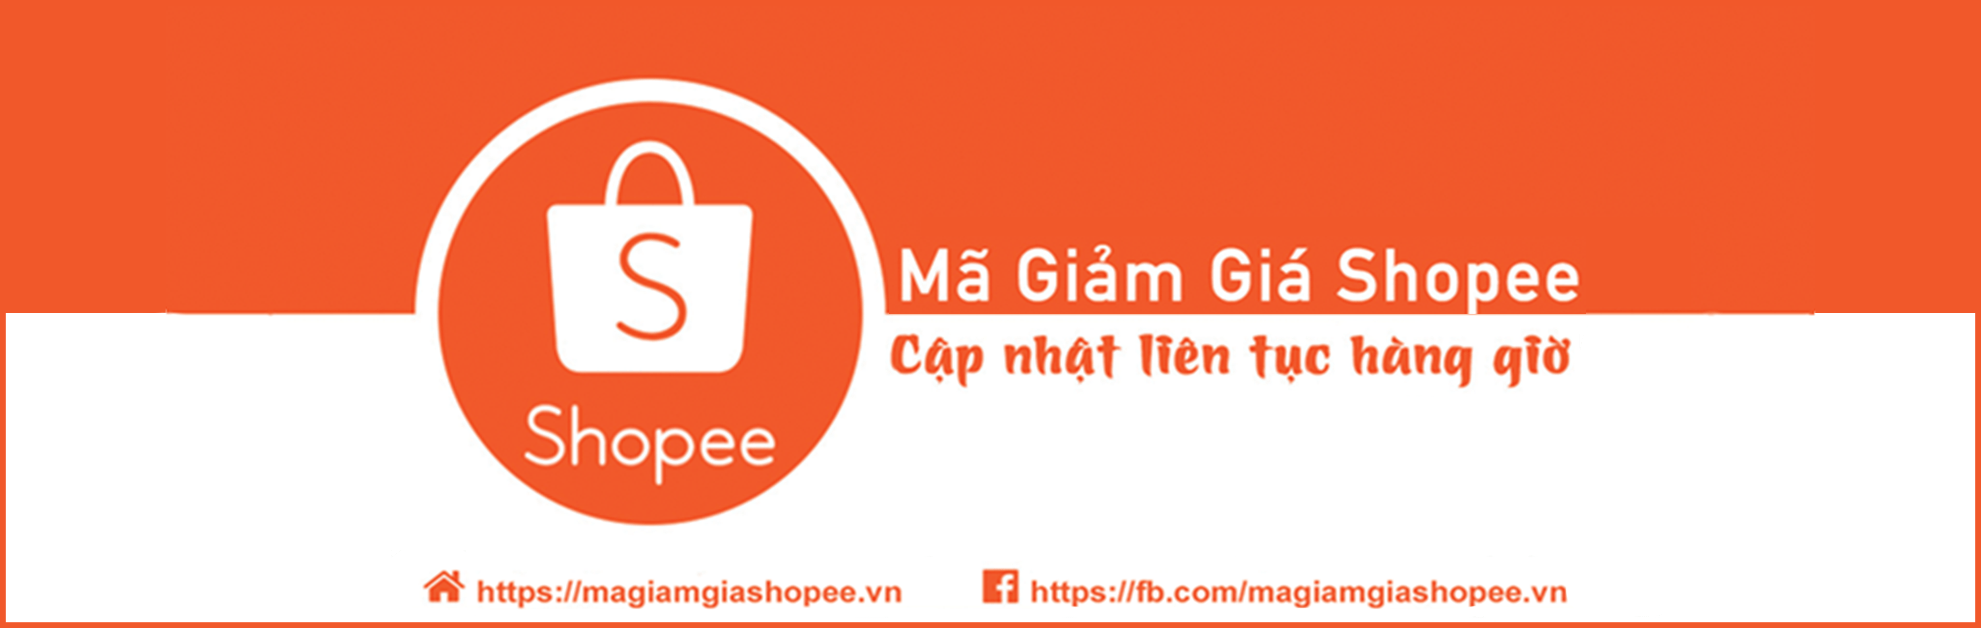 Website magiamgiashopee.vn là nơi chuyên tổng hợp và chia sẻ miễn phí mã giảm giá Shopee và các chương trình khuyến mãi mới nhất trên Shopee Việt Nam.